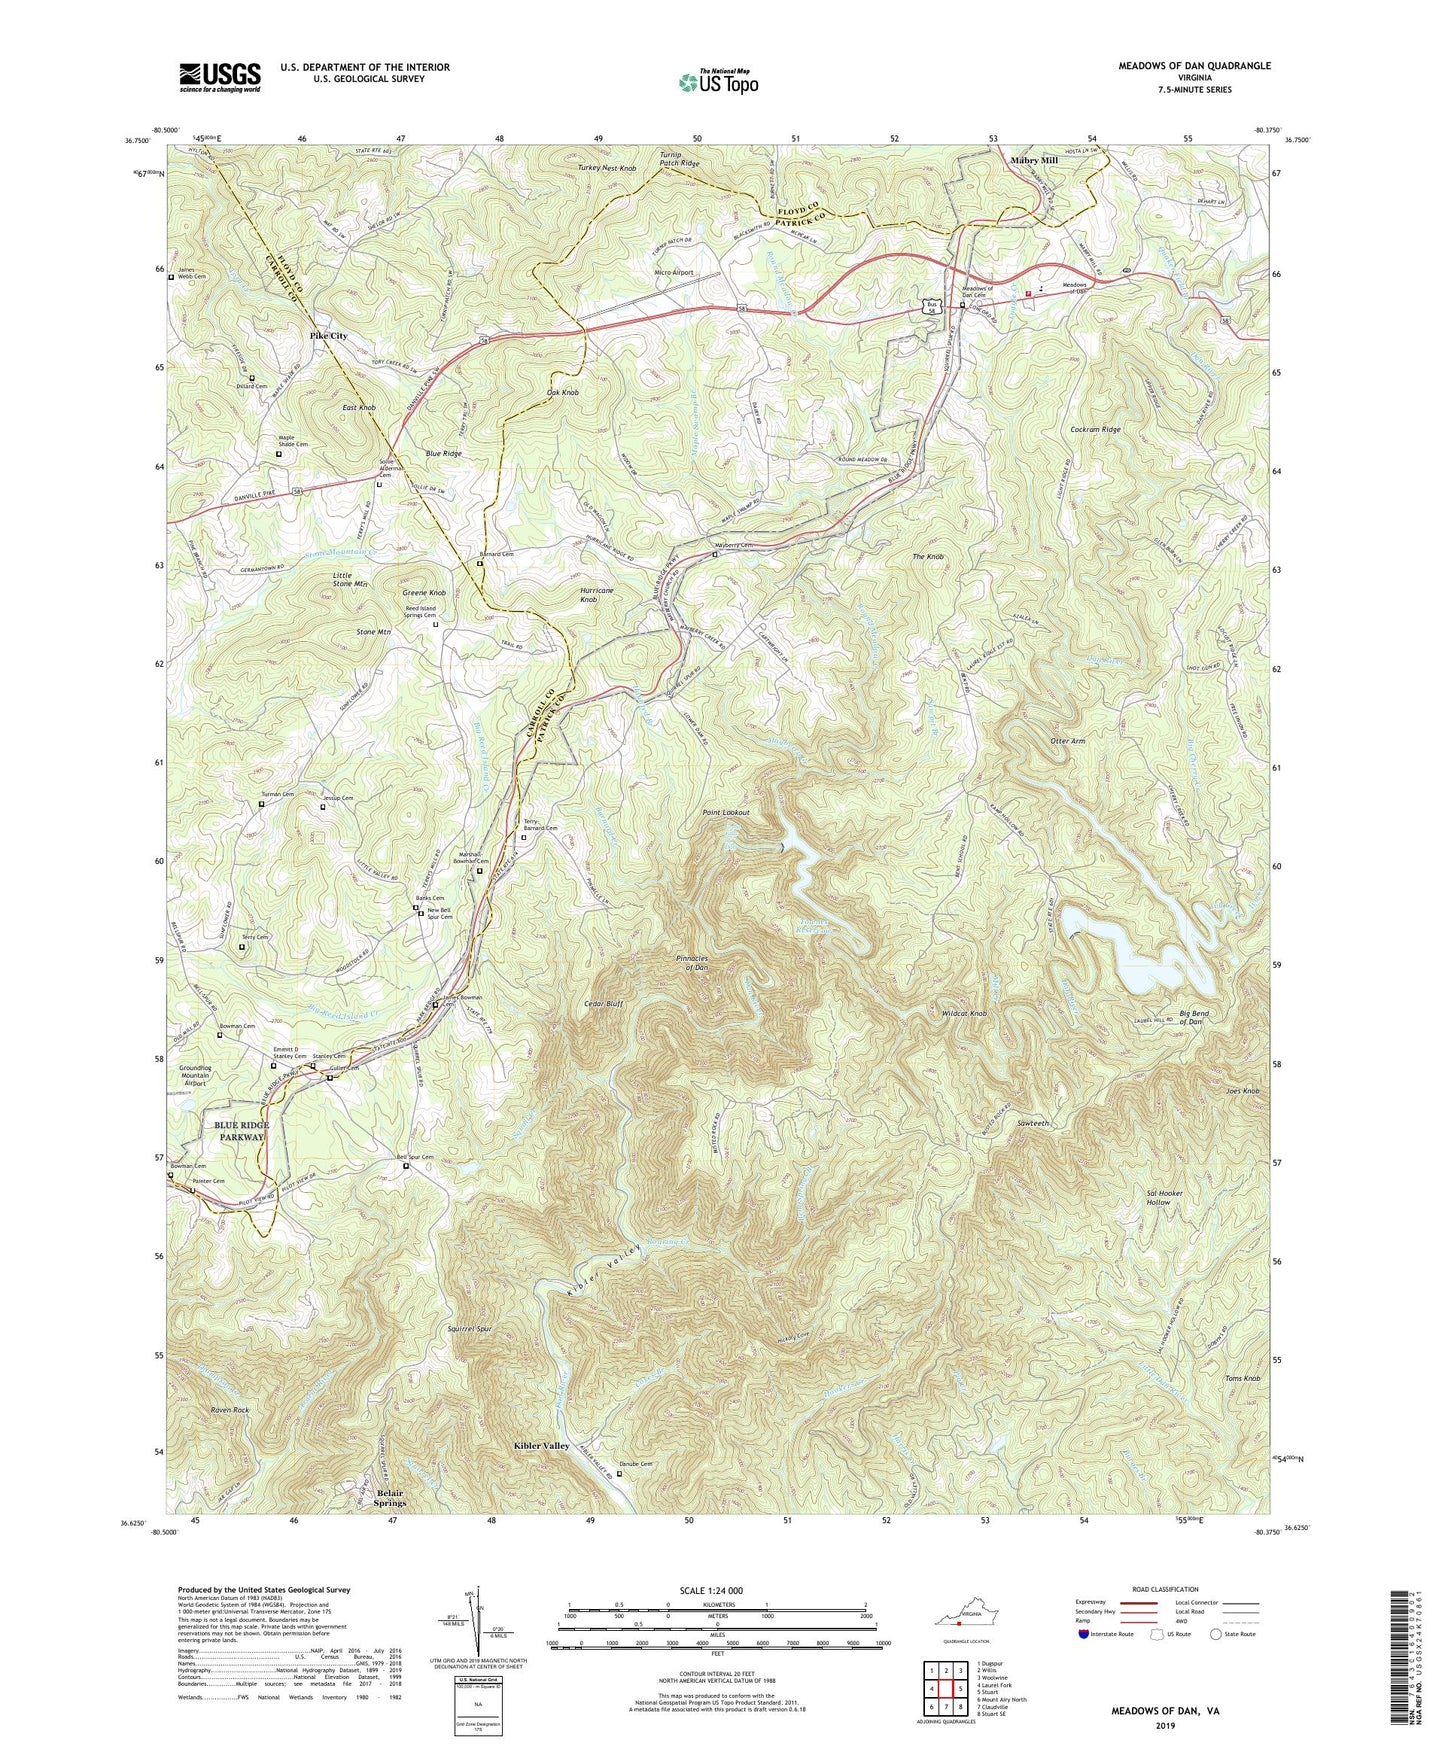 Meadows of Dan Virginia US Topo Map Image